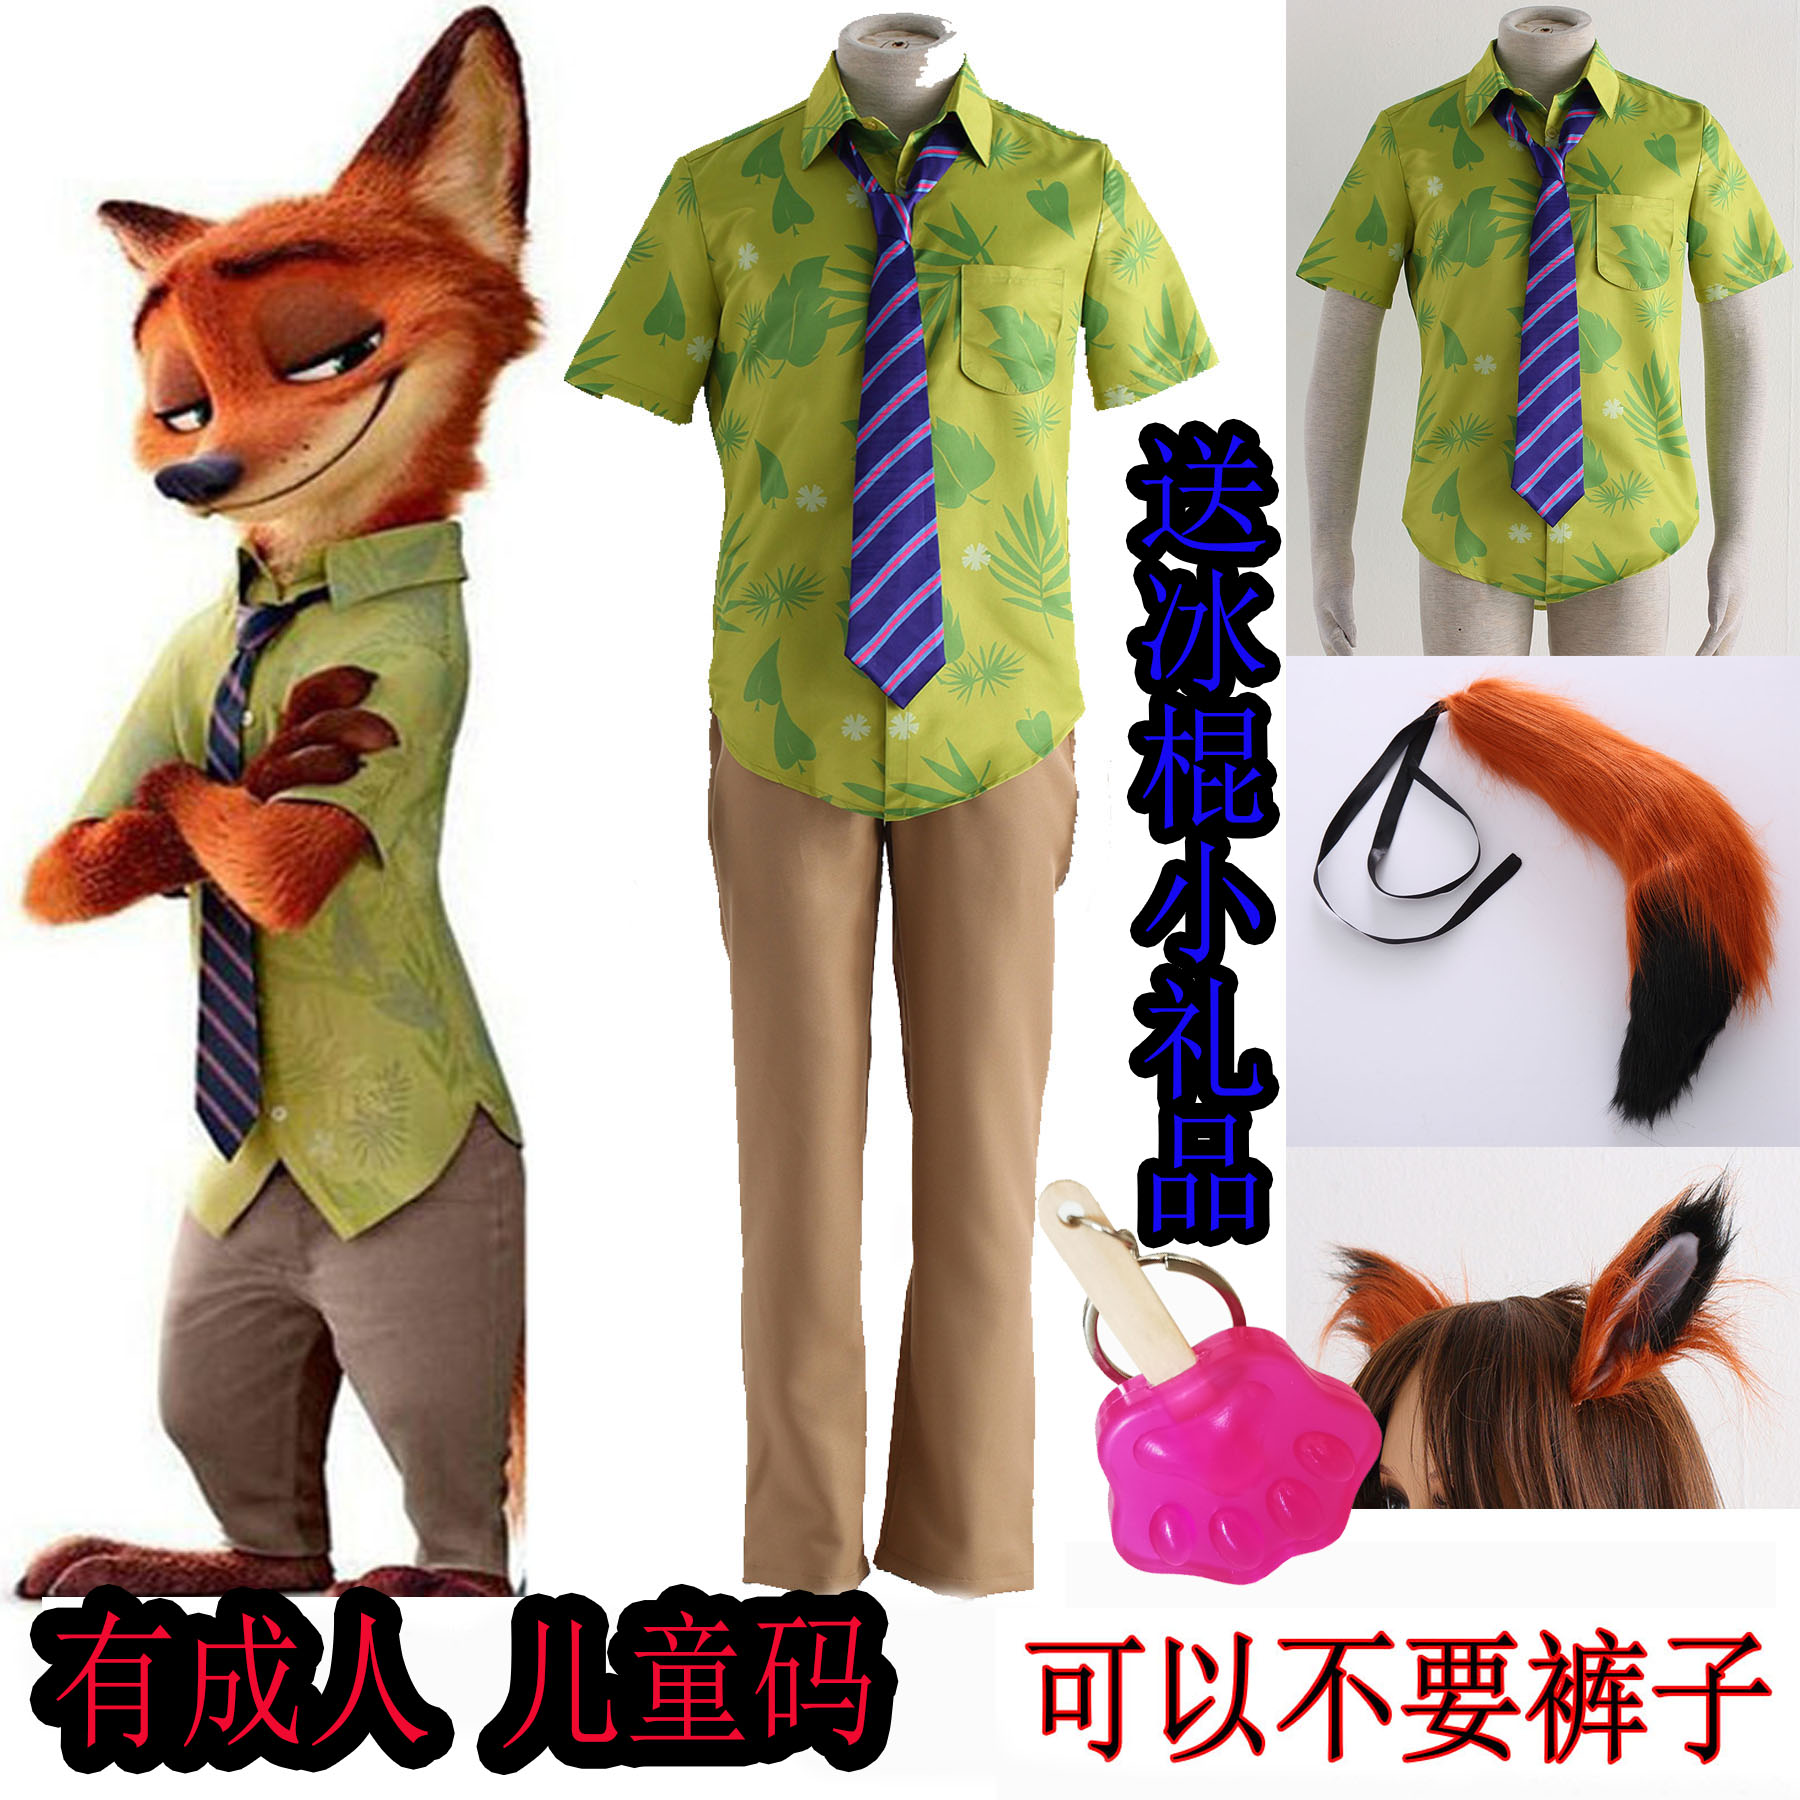 疯狂动物城狐狸尼克儿童成人动漫cosplay服装万圣节漫展COS表演服